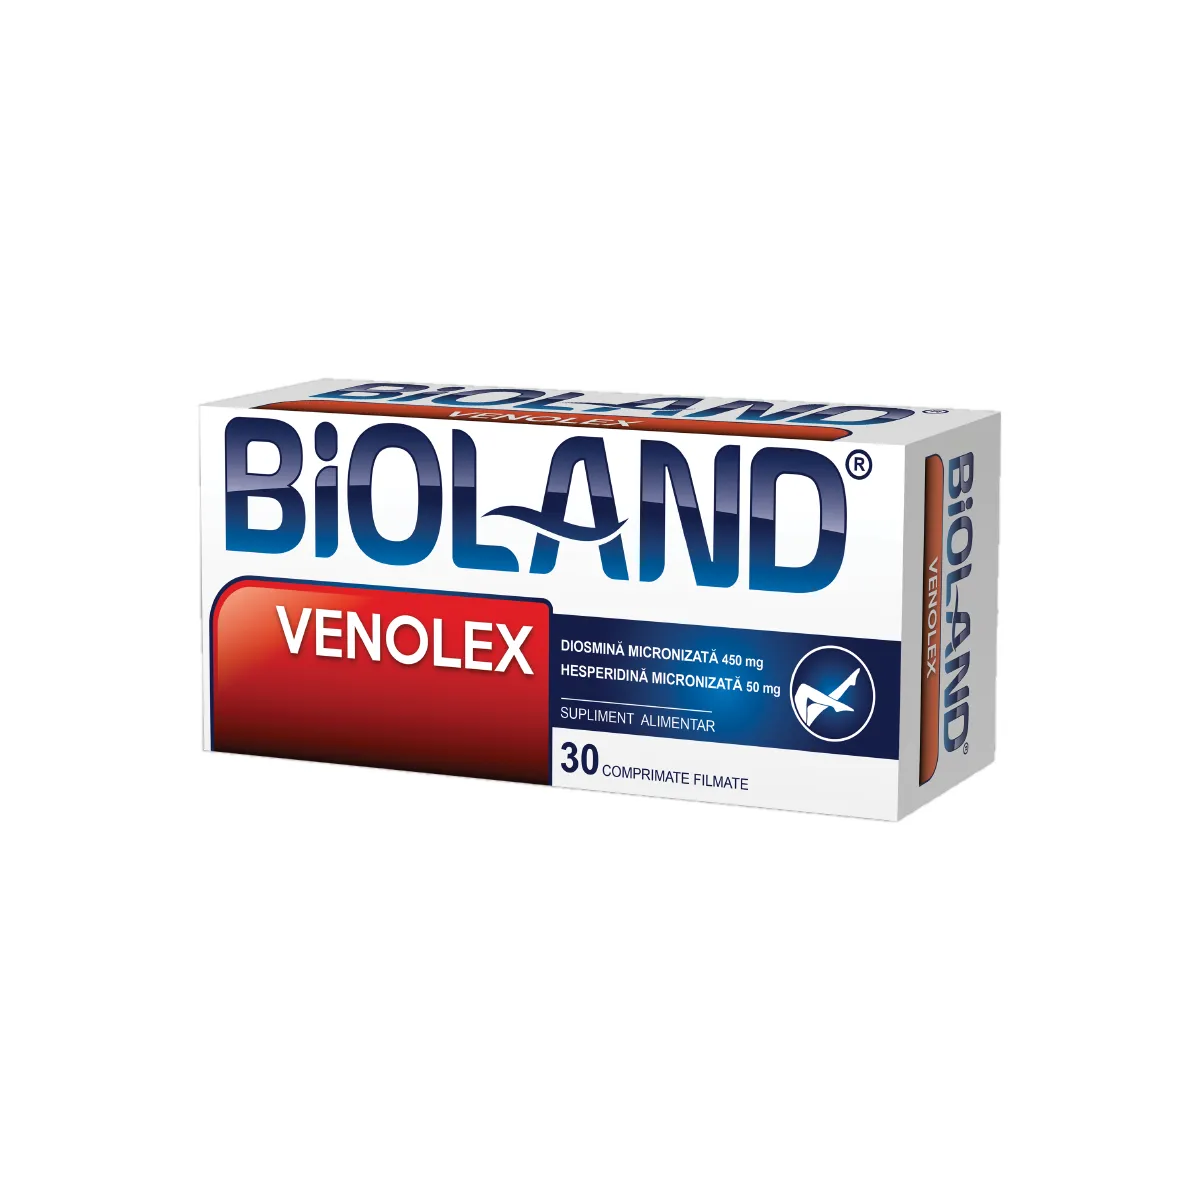 Venolex Bioland, 30 comprimate filmate, Biofarm